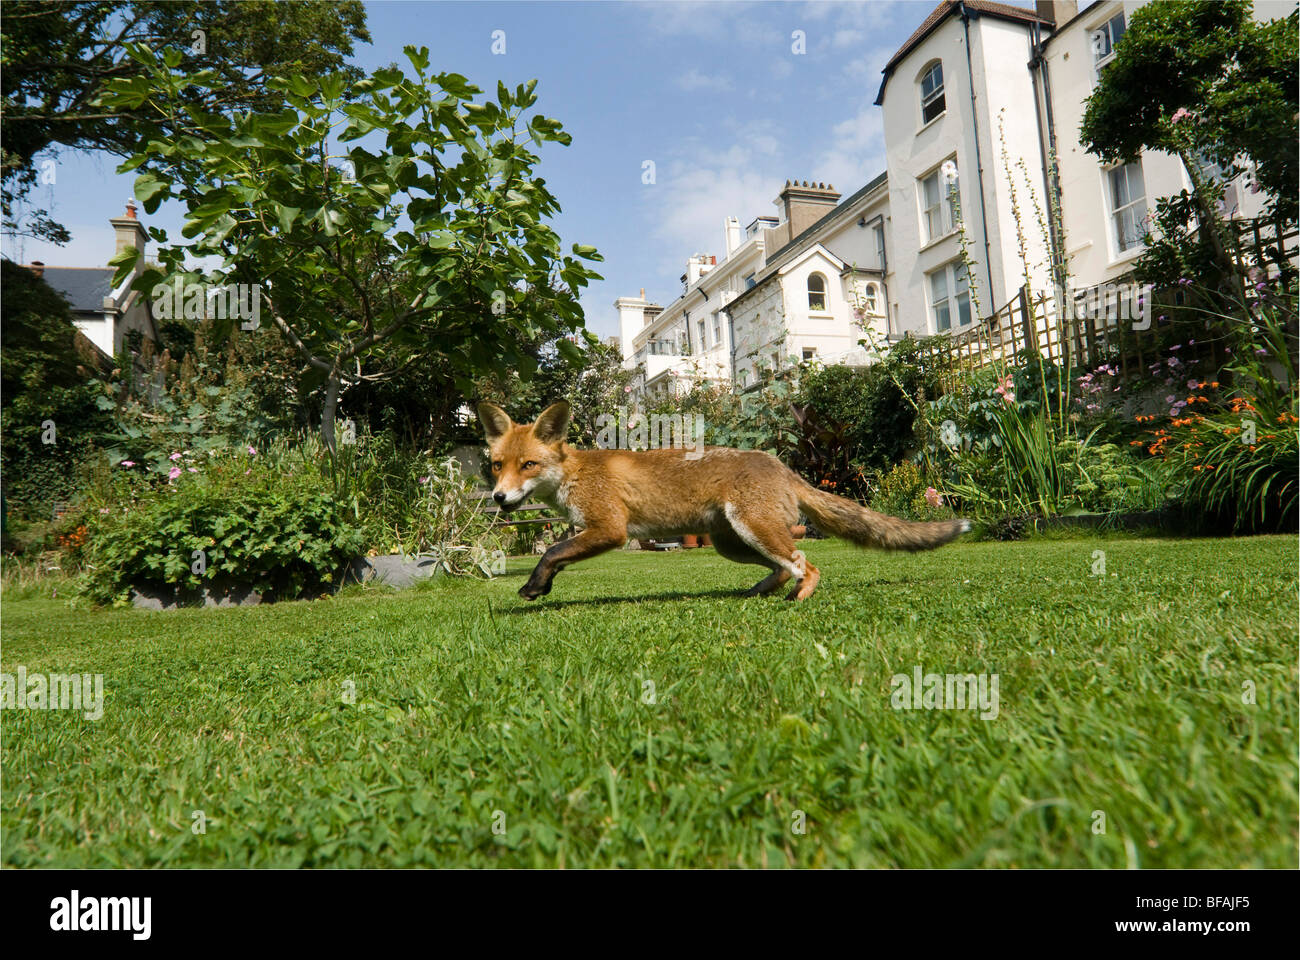 An urban fox  in a town garden in daylight. Stock Photo